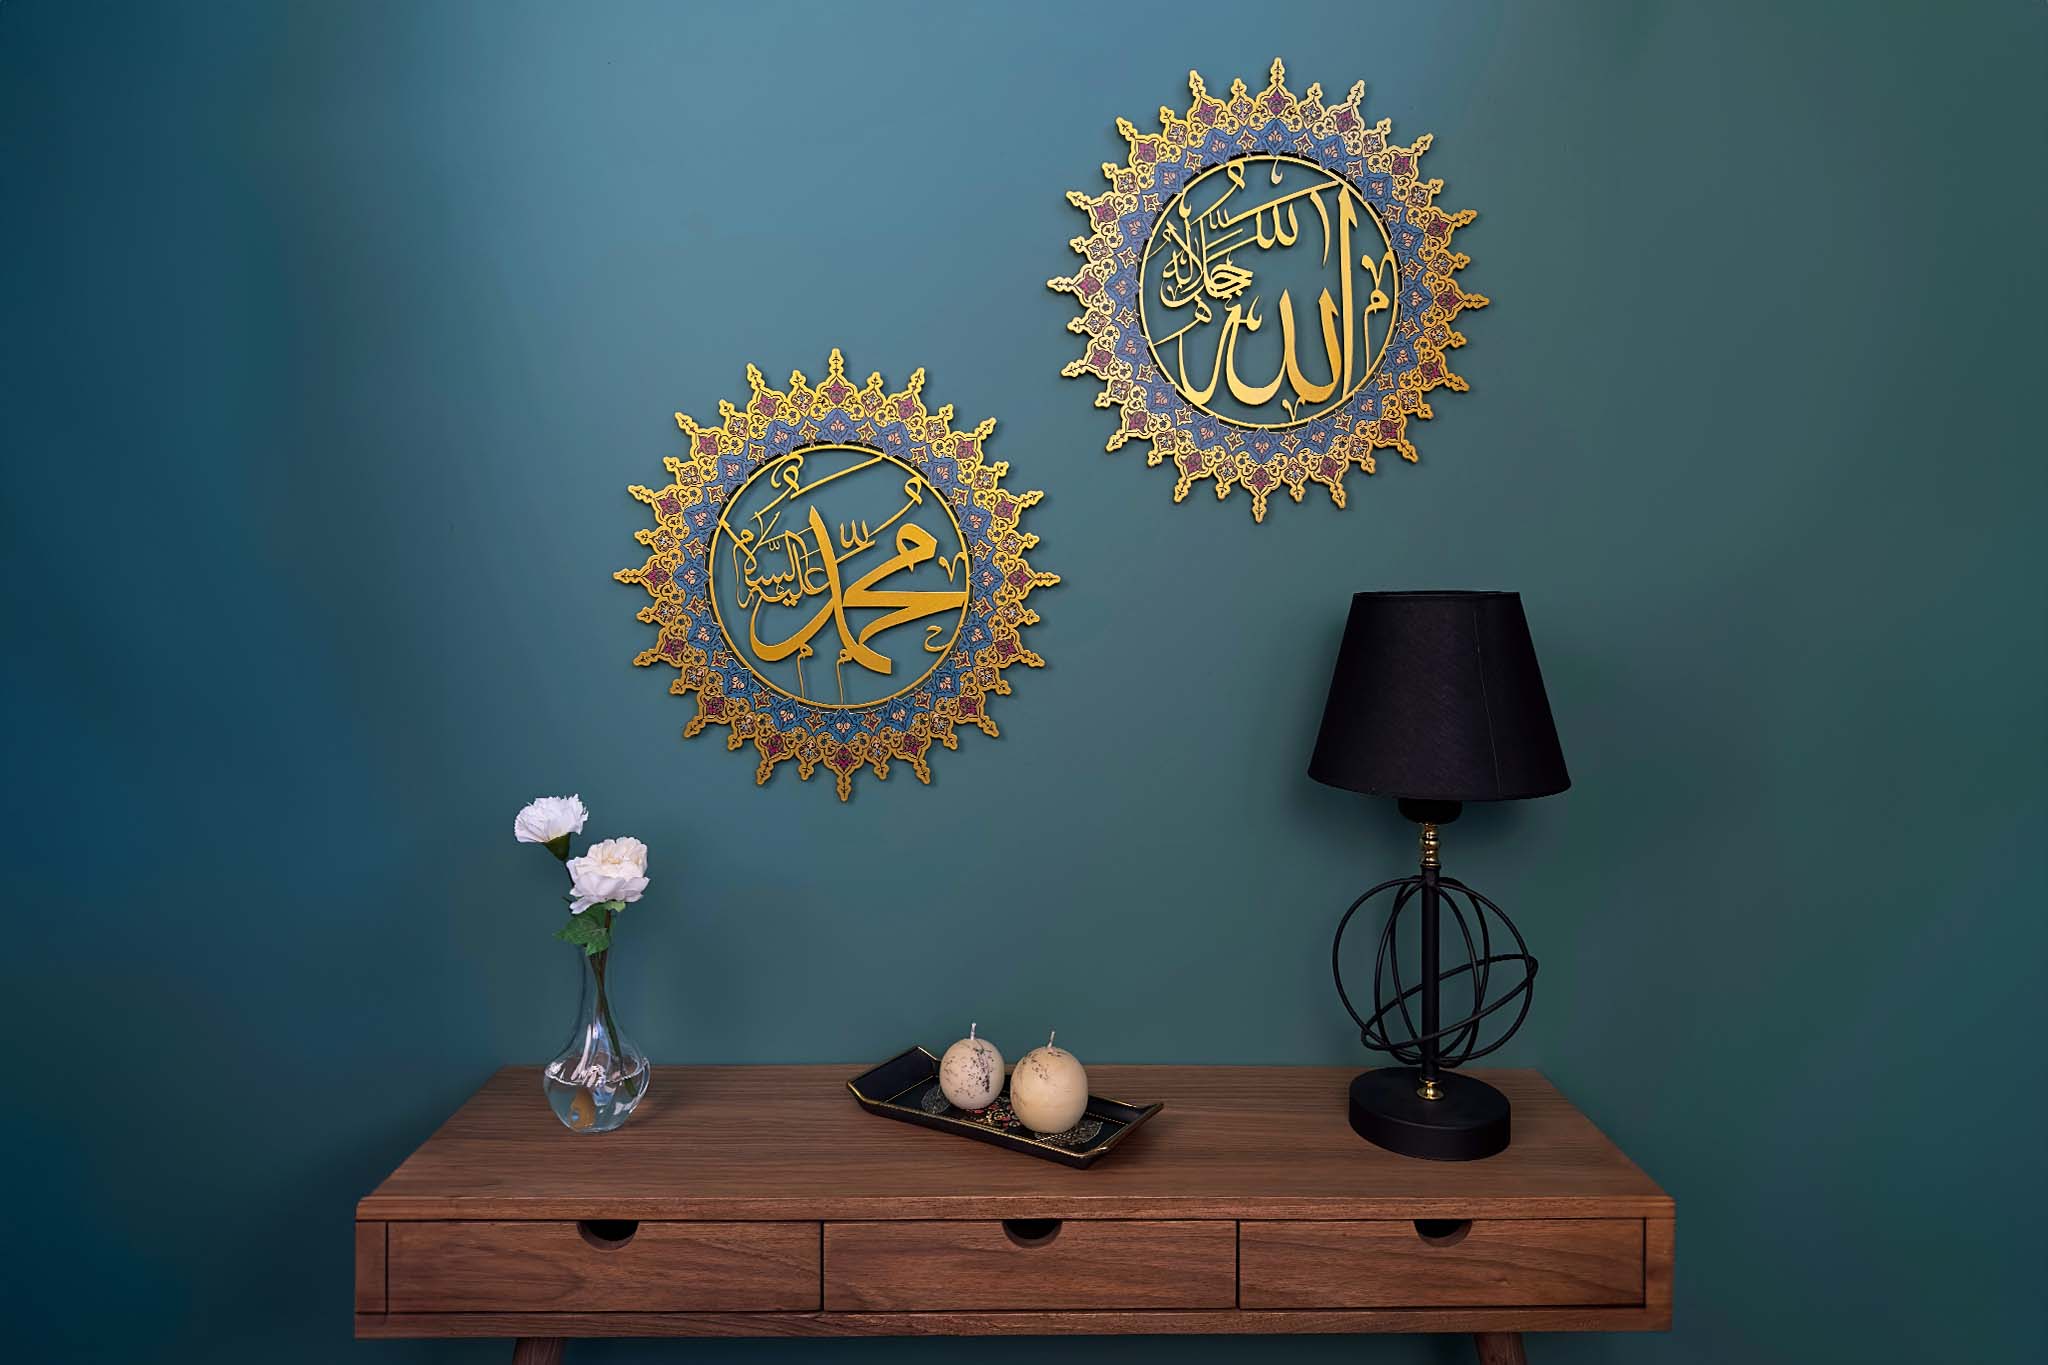 Islamic Jewelry & İslamic Home Decor – Shukran Islamic Arts